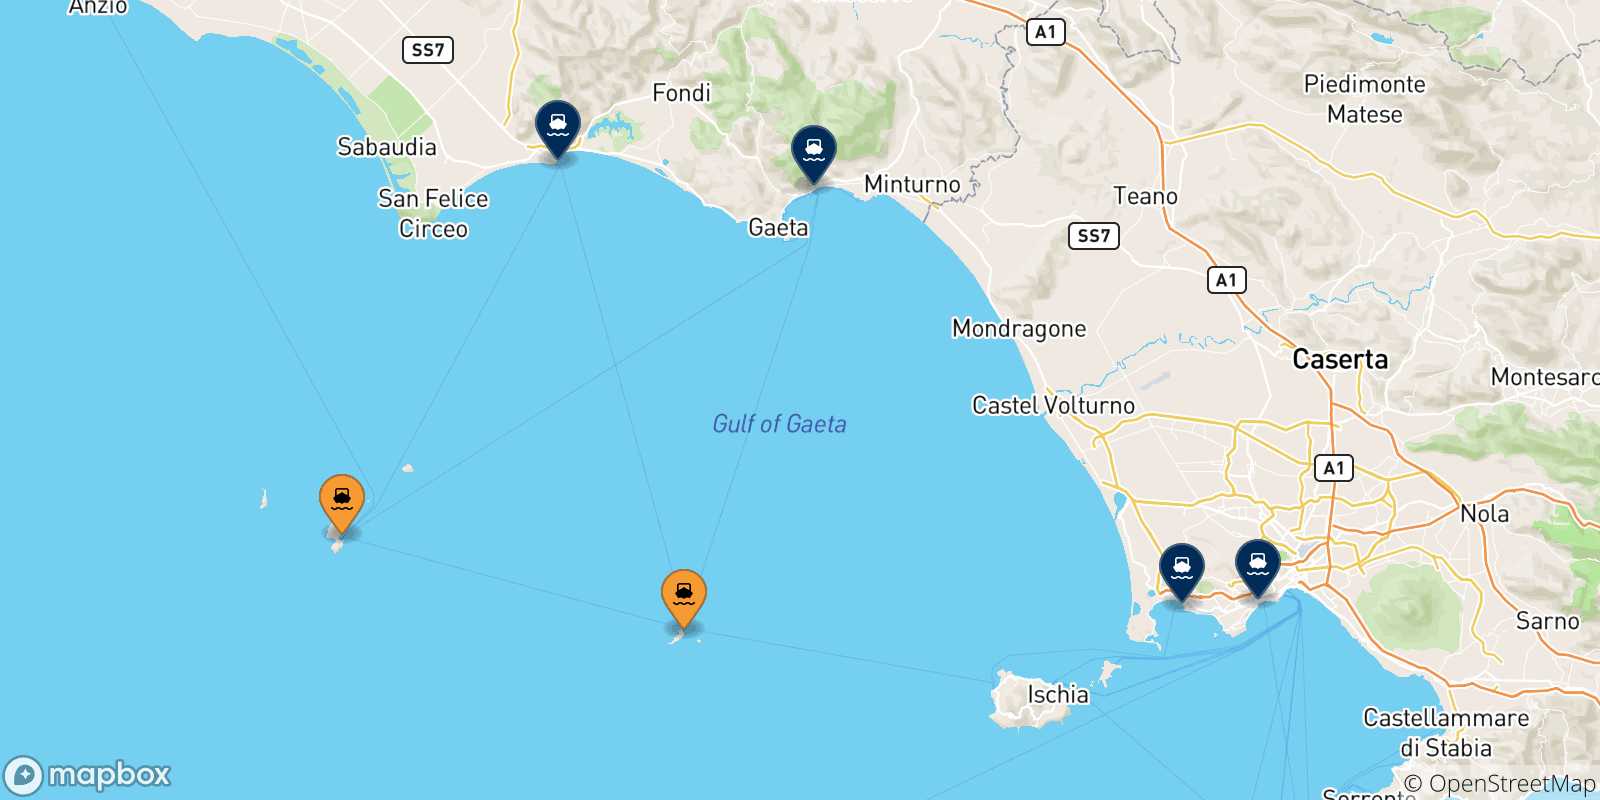 Mappa delle possibili rotte tra le Isole Pontine e l'Italia